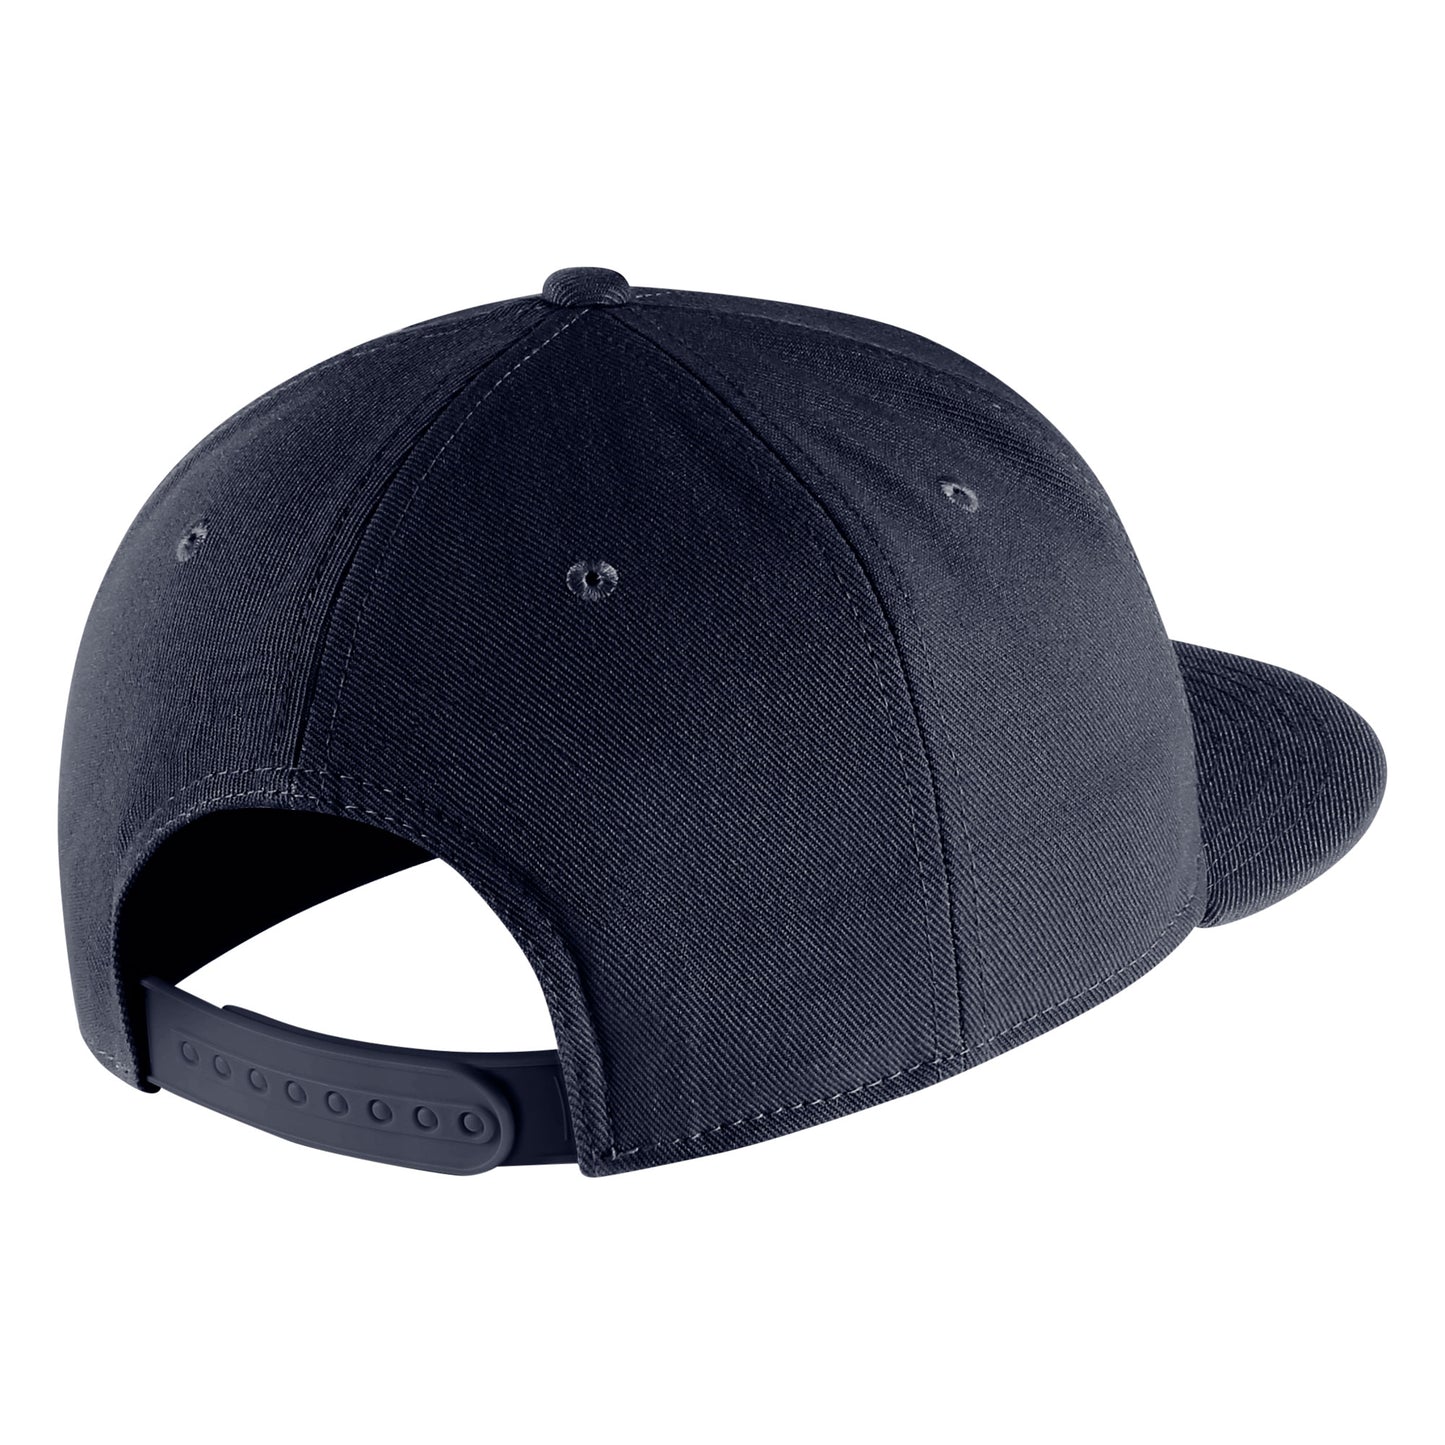 U.C. Berkeley script Cal Nike Pro Flatbill Hat-Navy-Shop College Wear